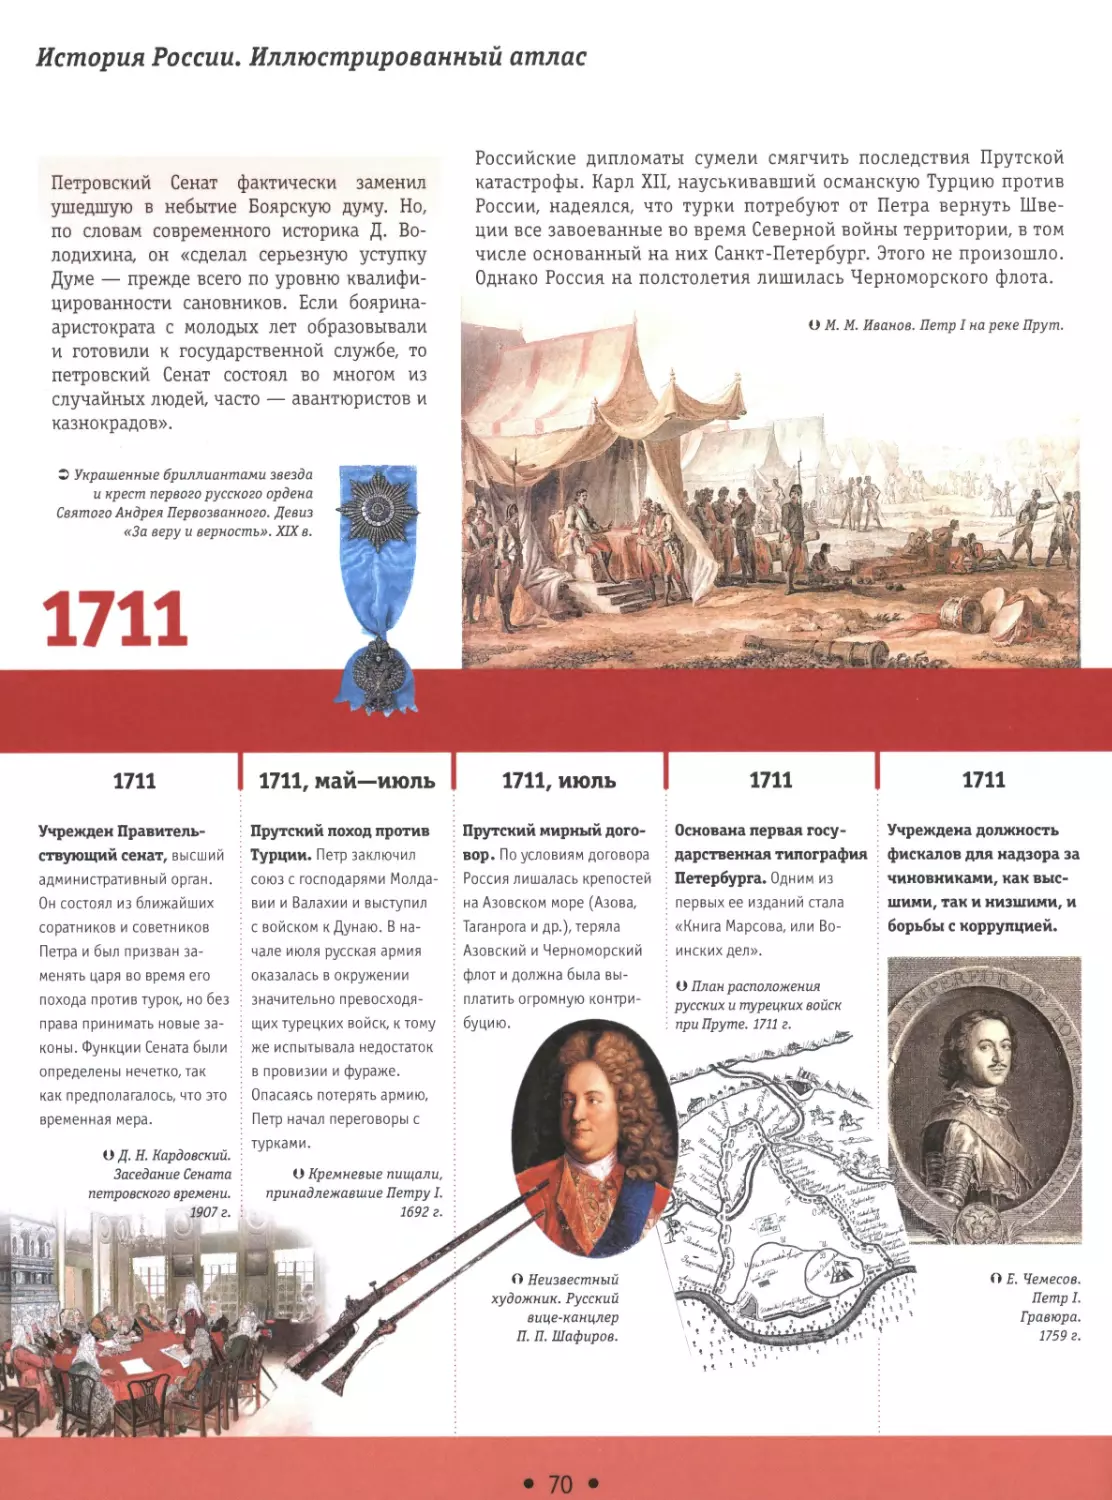 1711-1713